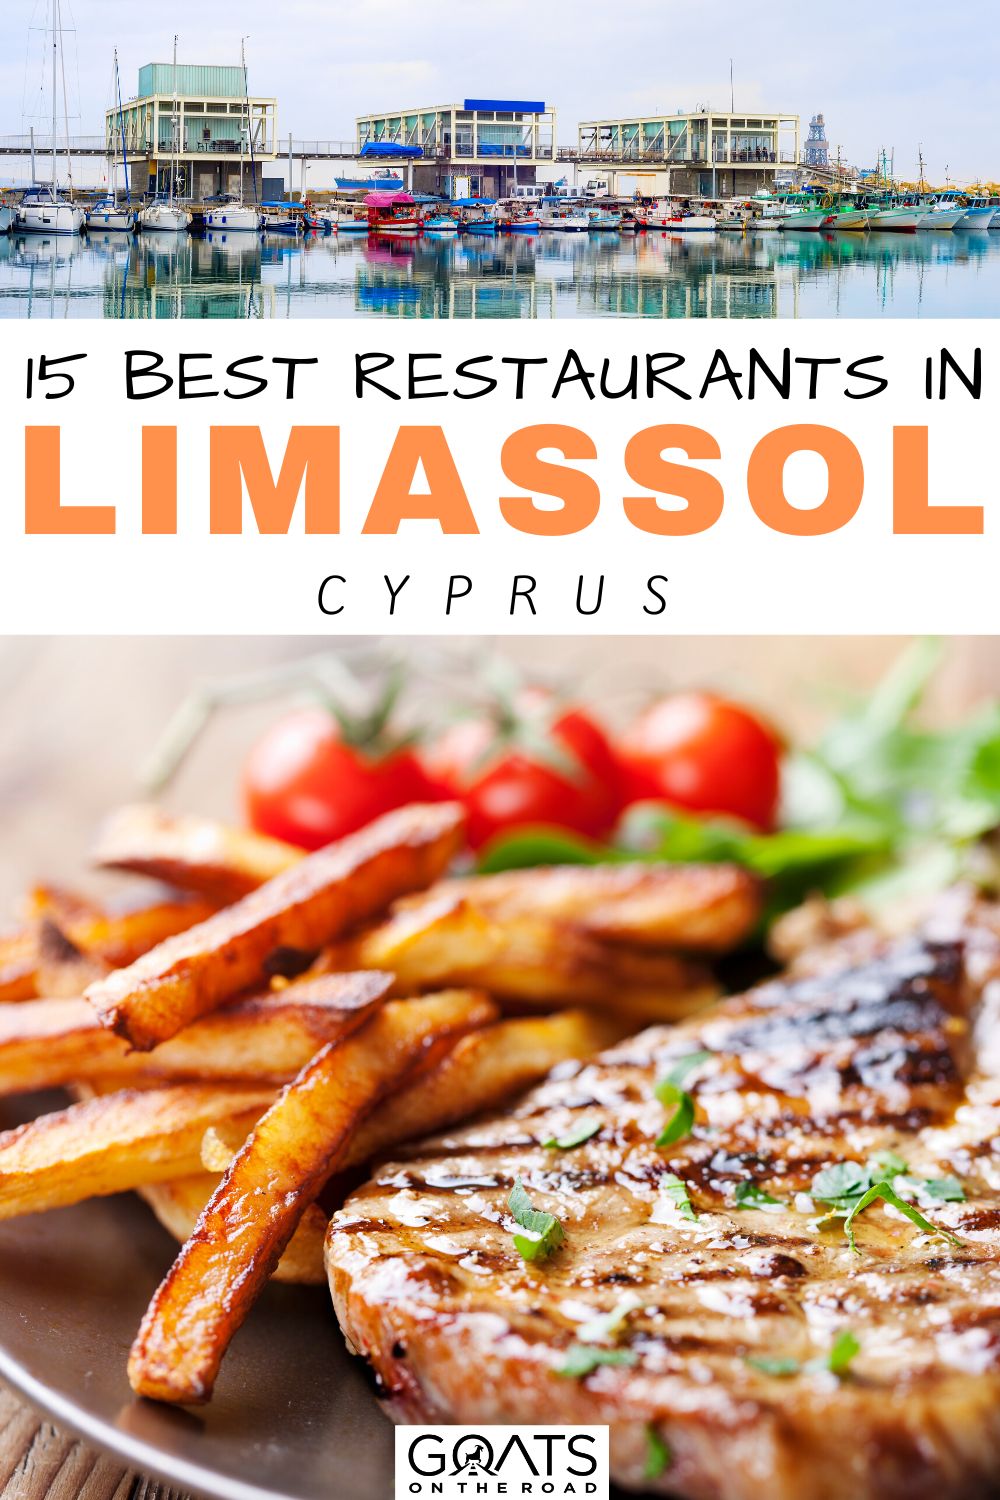 “15 Best Restaurants in Limassol, Cyprus